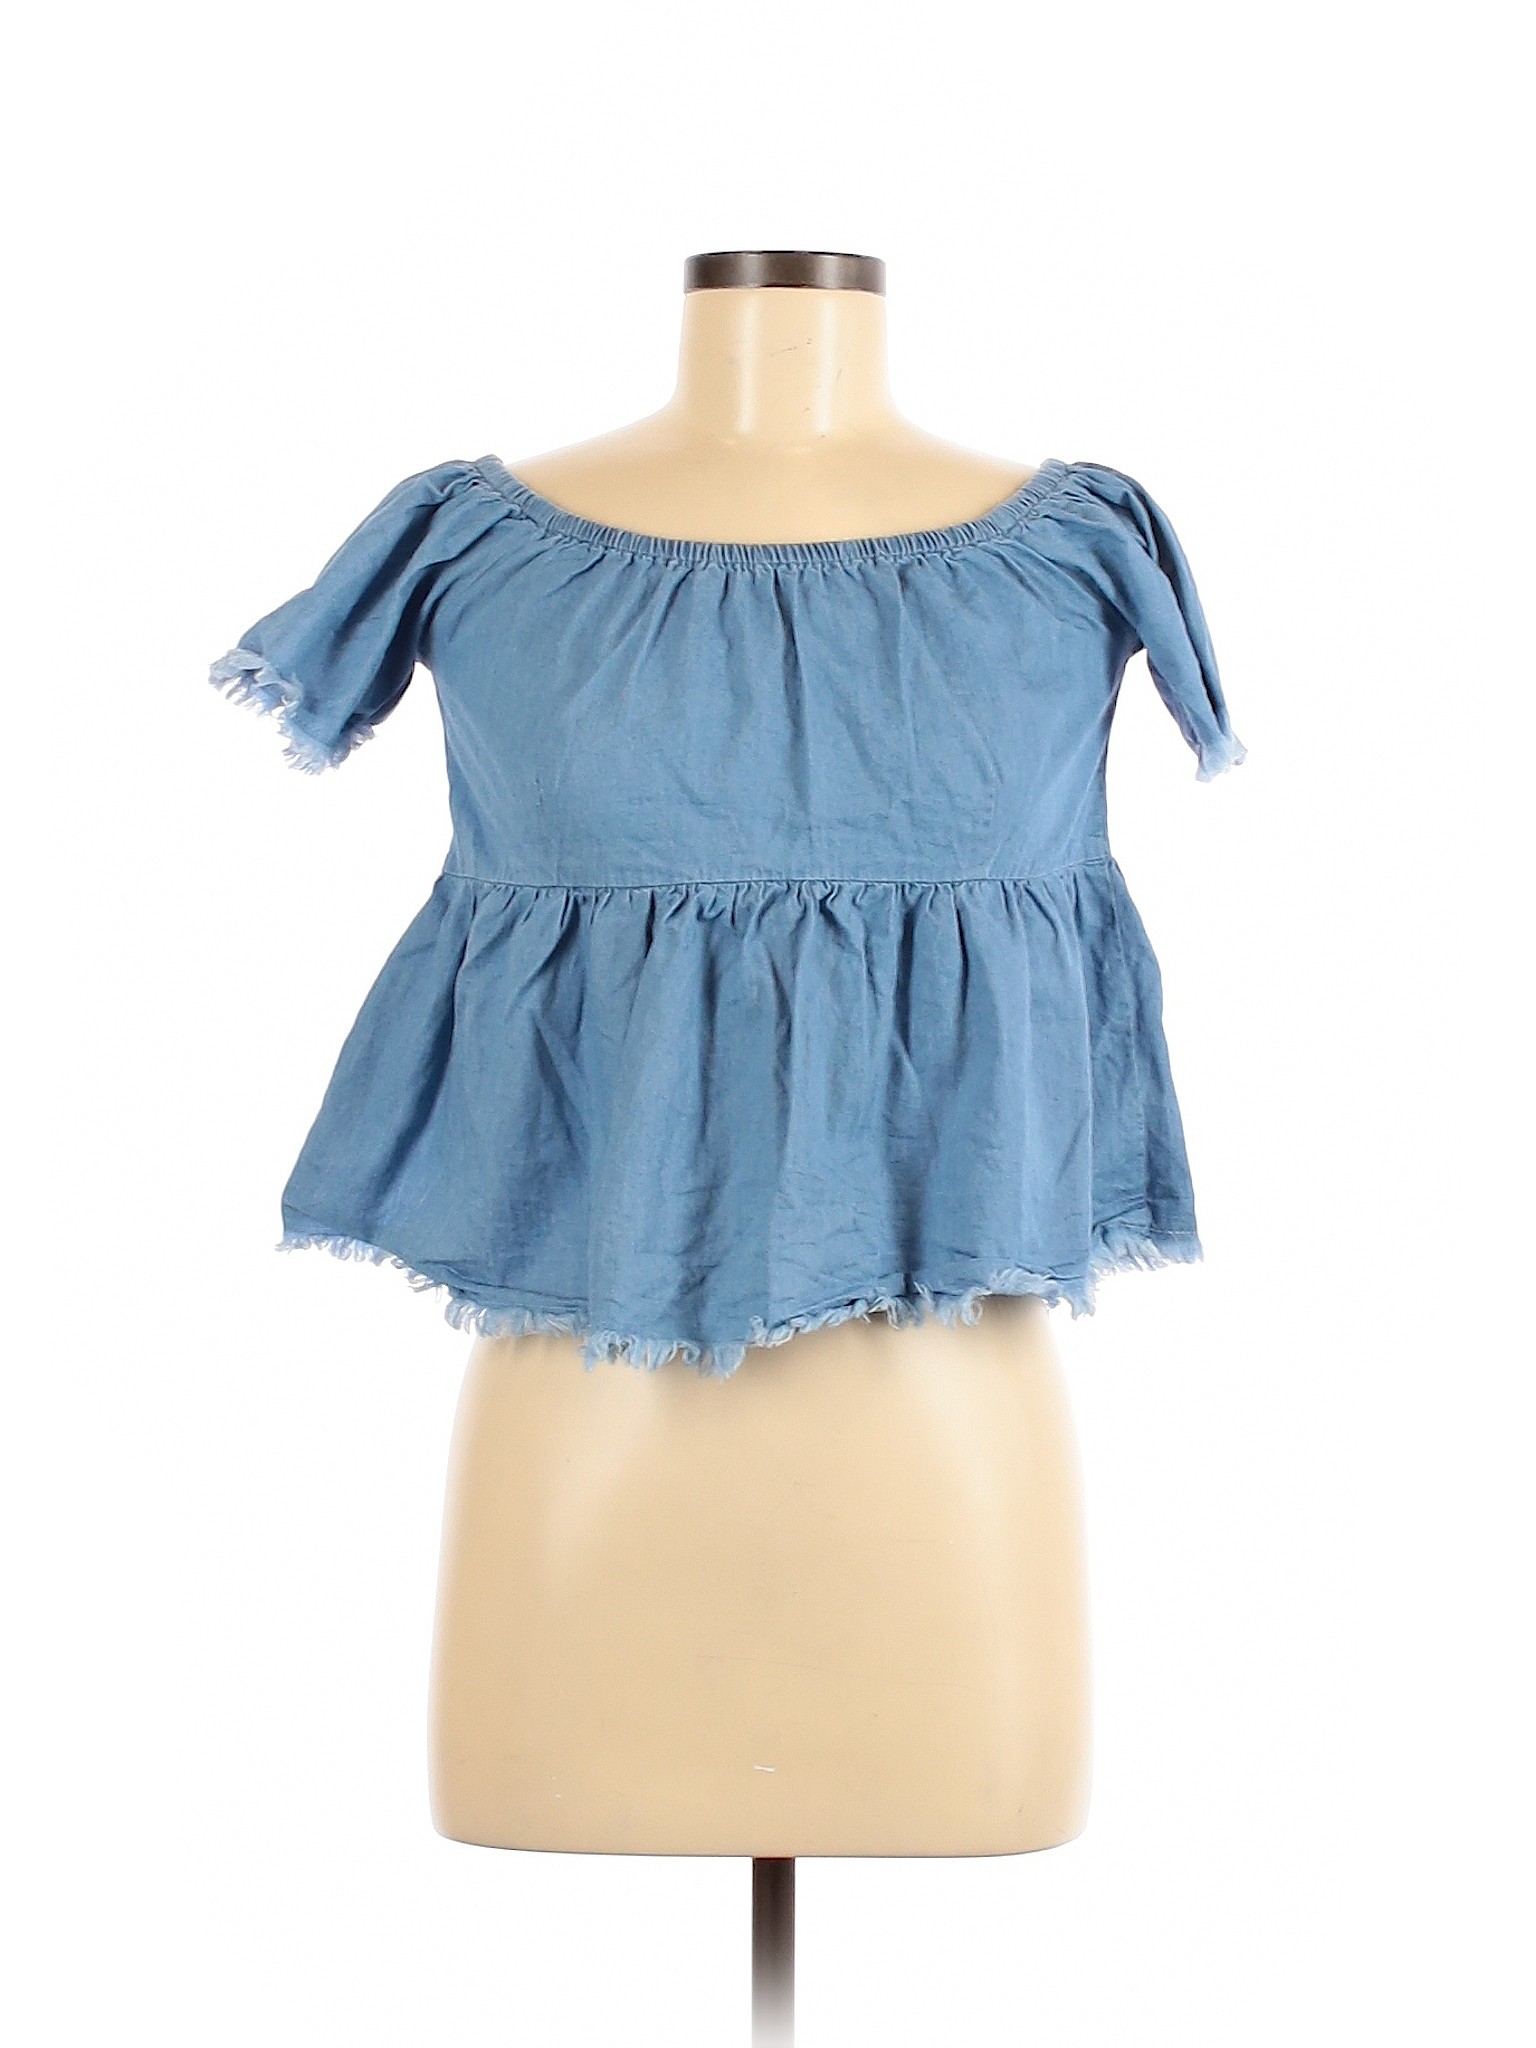 Forever 21 Women Blue Short Sleeve Blouse M | eBay